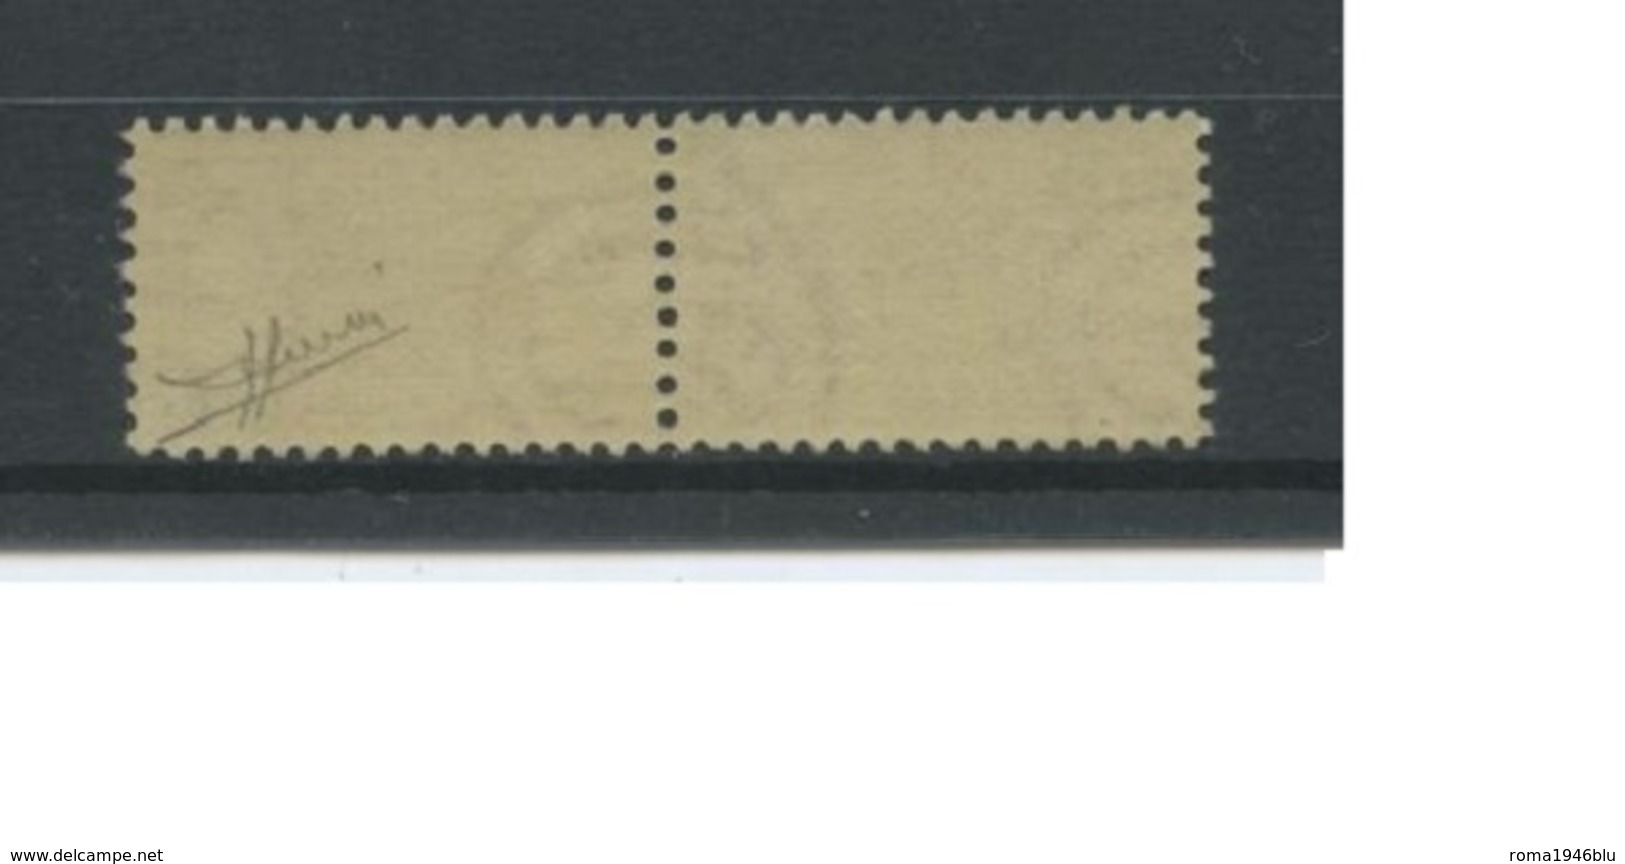 REPUBBLICA 1948 PACCHI POSTALI 300 LIRE ** MNH CENTRATISSIMO LUSSO C. SORANI - Postal Parcels